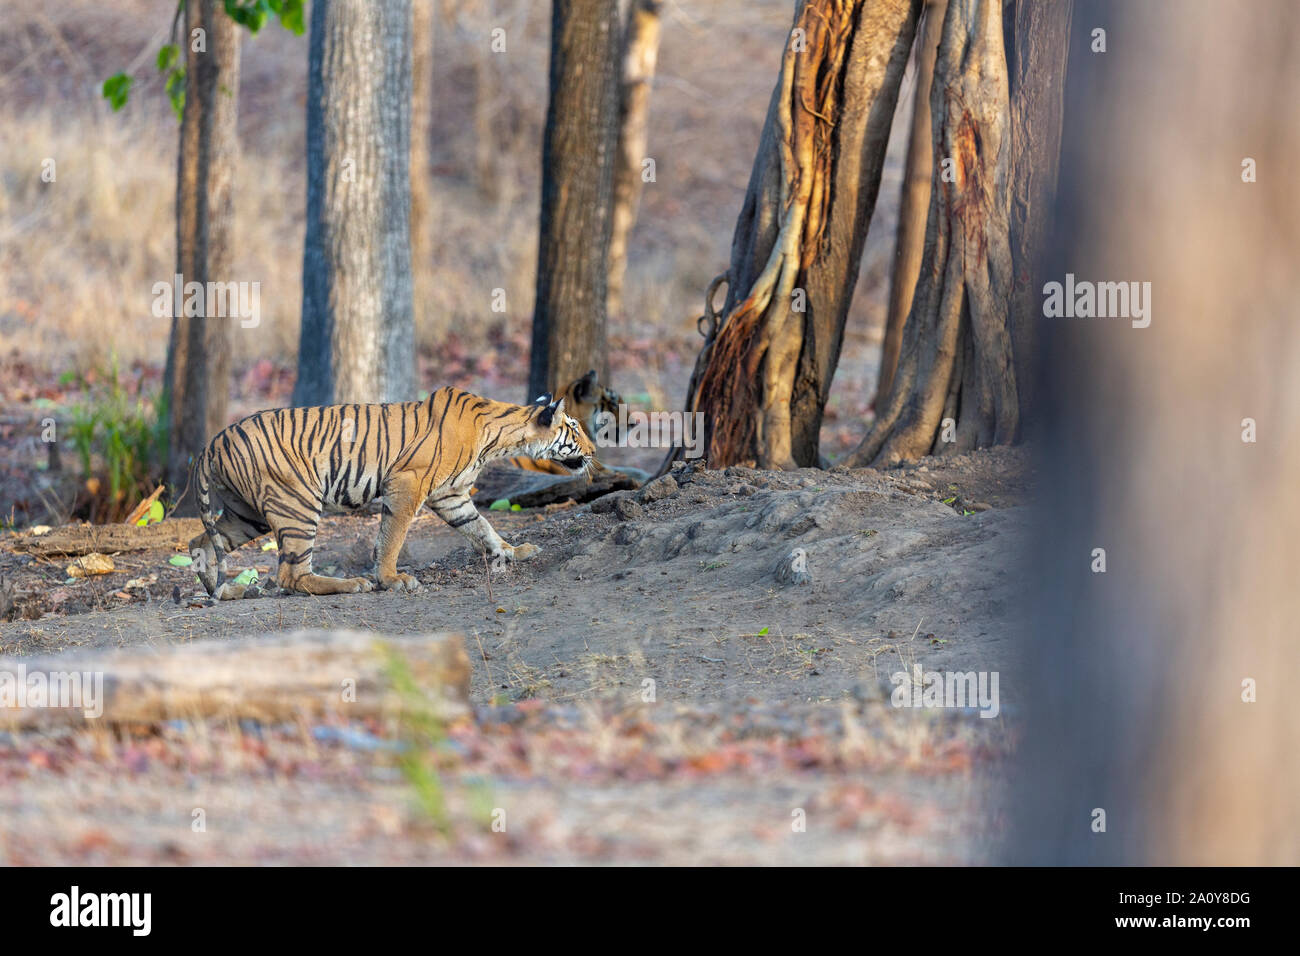 Royal Bengal Tiger or Panthera Tigris Tigris at Pench National Park, India Stock Photo